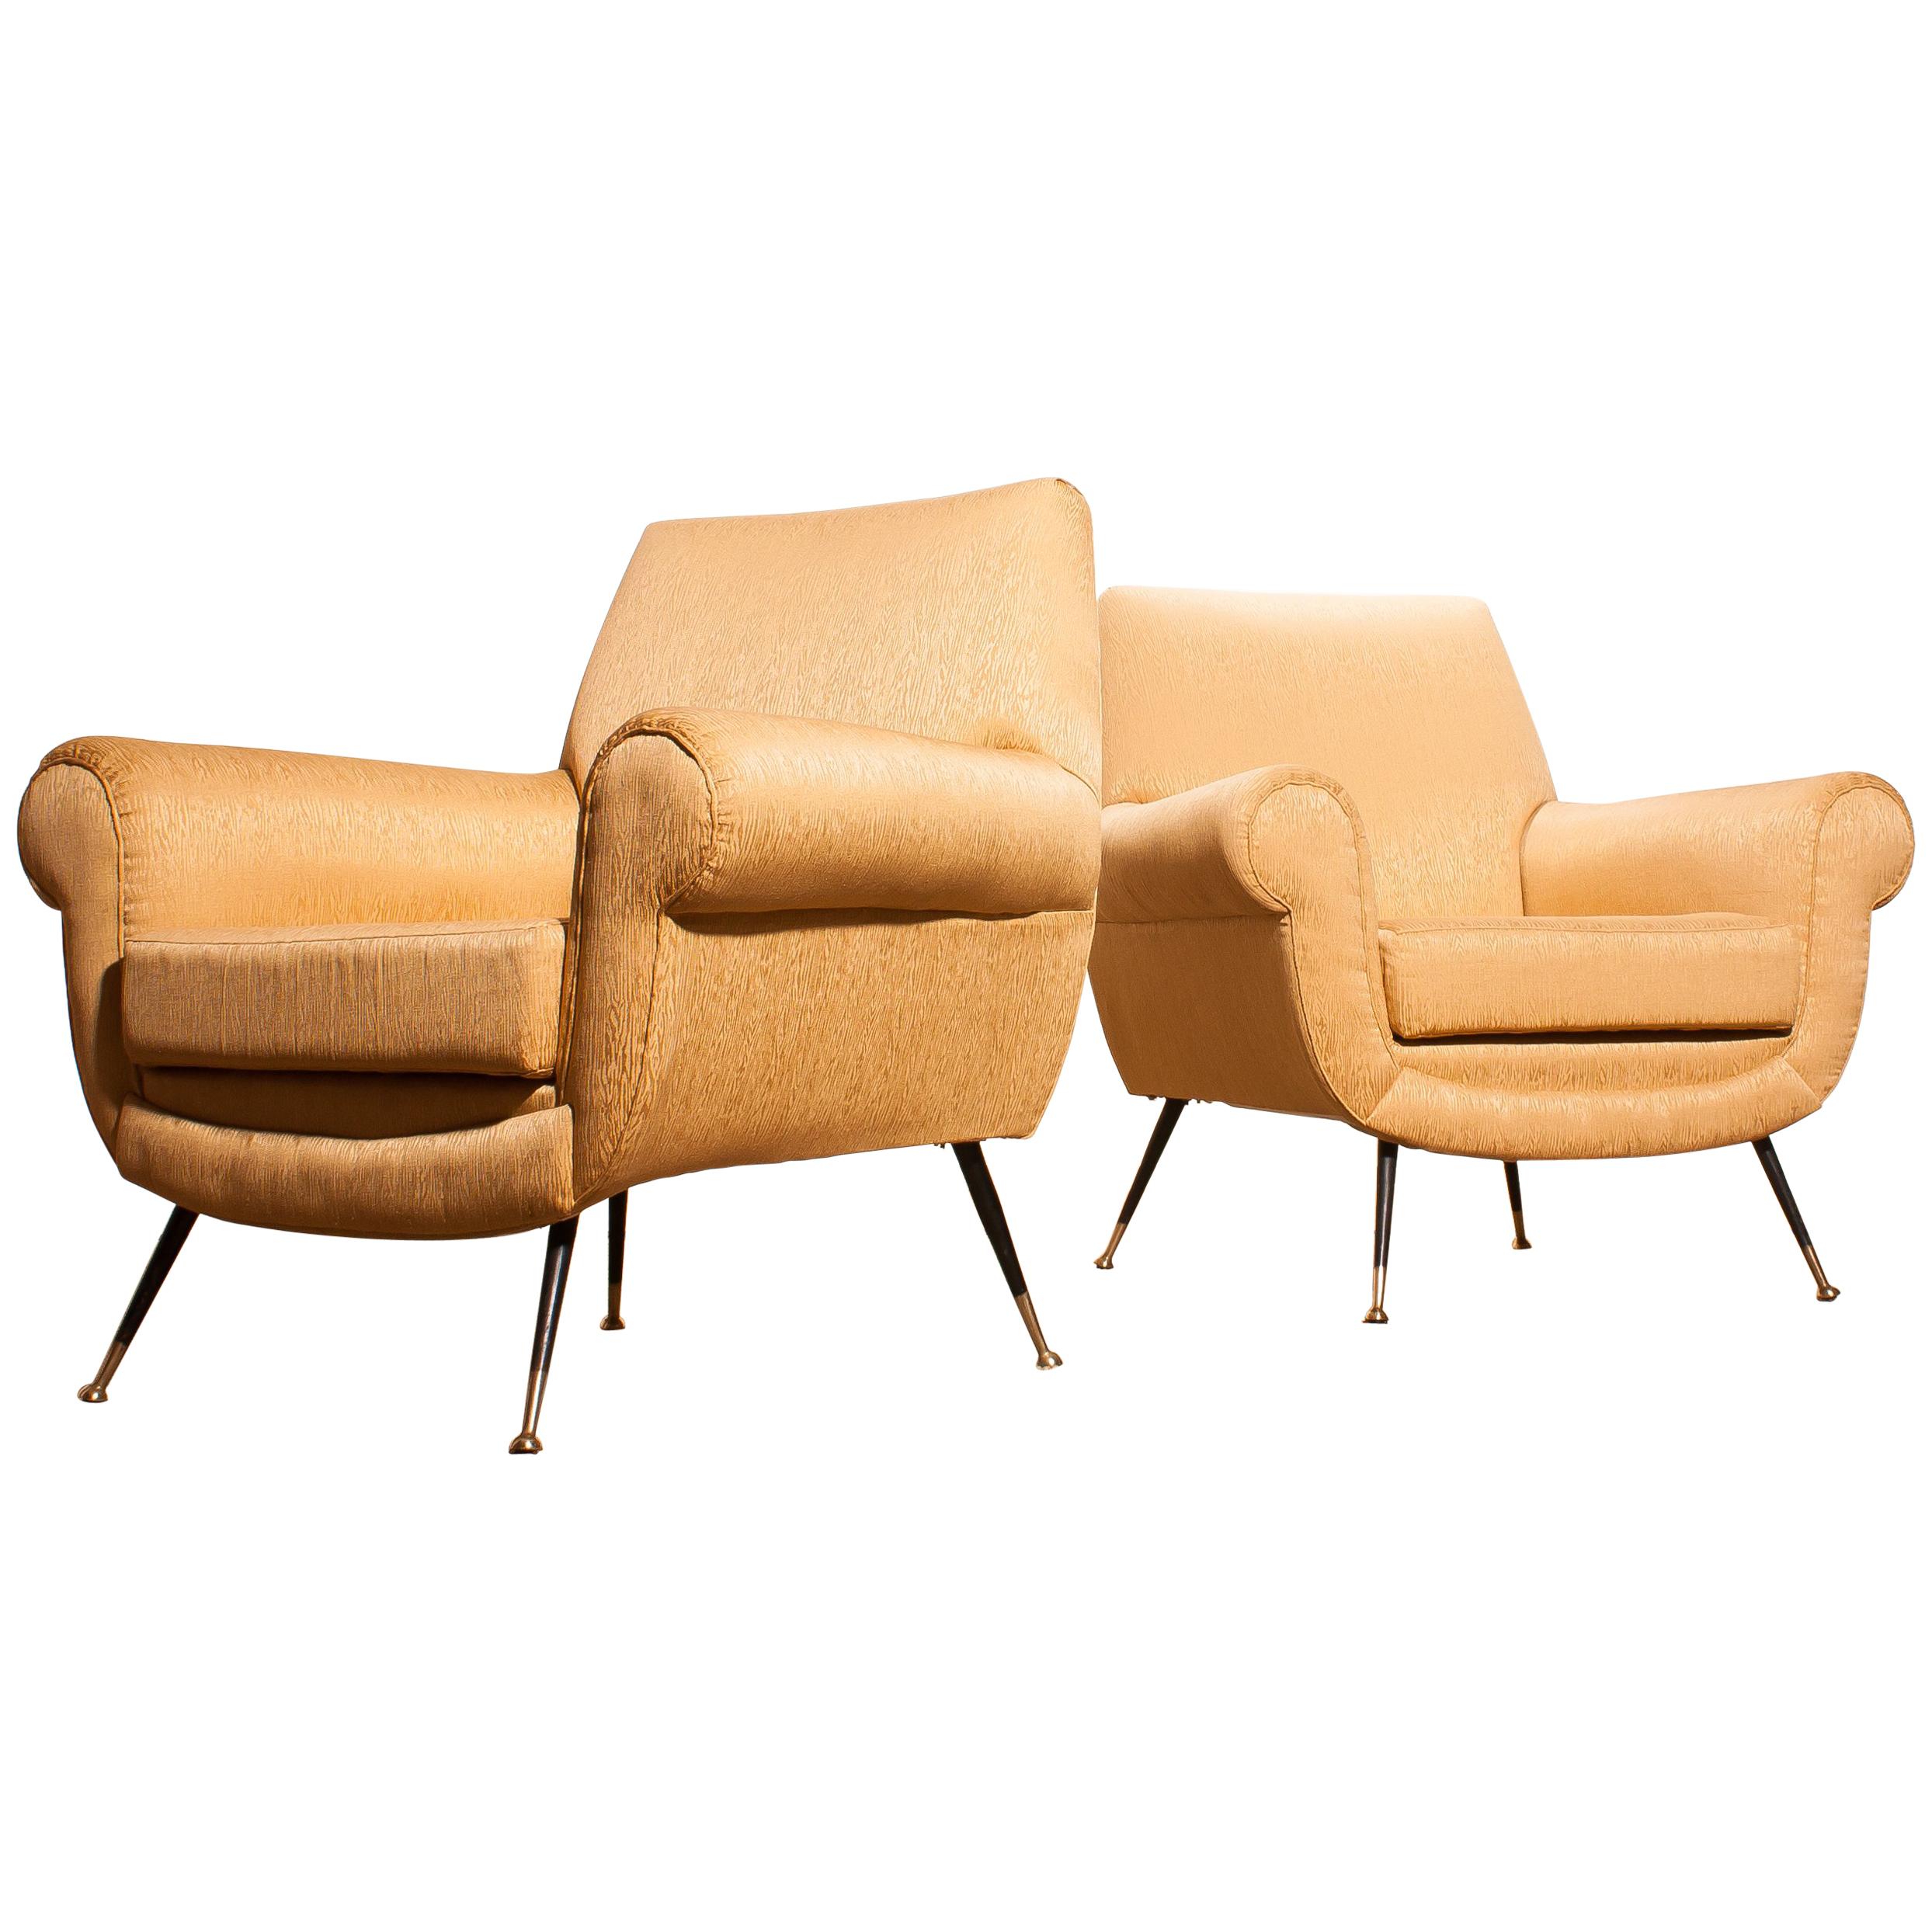 Golden Jacquard Upholstered Easy Chairs by Gigi Radice for Minotti, Brass Legs